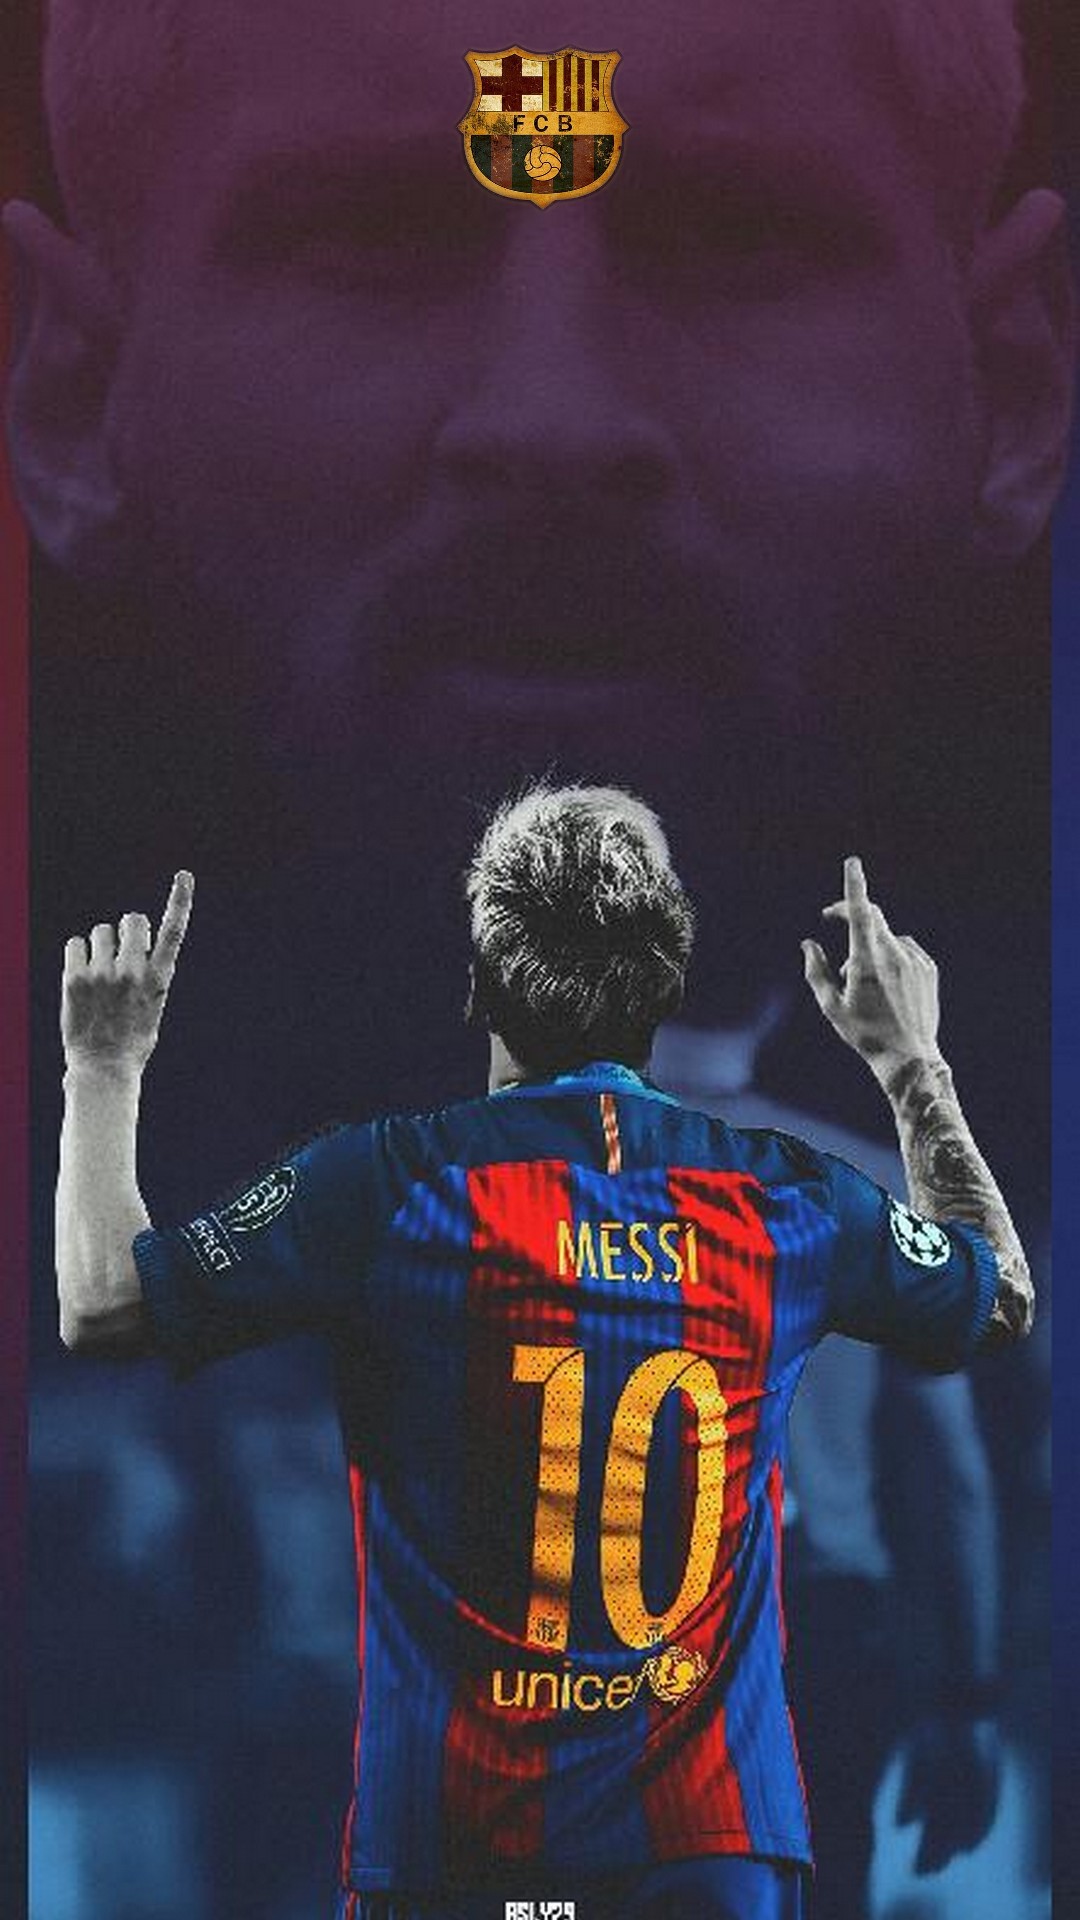 Năm 2019 đã qua, nhưng những bức ảnh nền Lionel Messi Barcelona Wallpaper vẫn đang hot và được nhiều người yêu thích trên toàn thế giới. Hãy tải hoàn toàn miễn phí những bức ảnh đó về điện thoại của bạn để cùng nhau chia sẻ niềm đam mê!